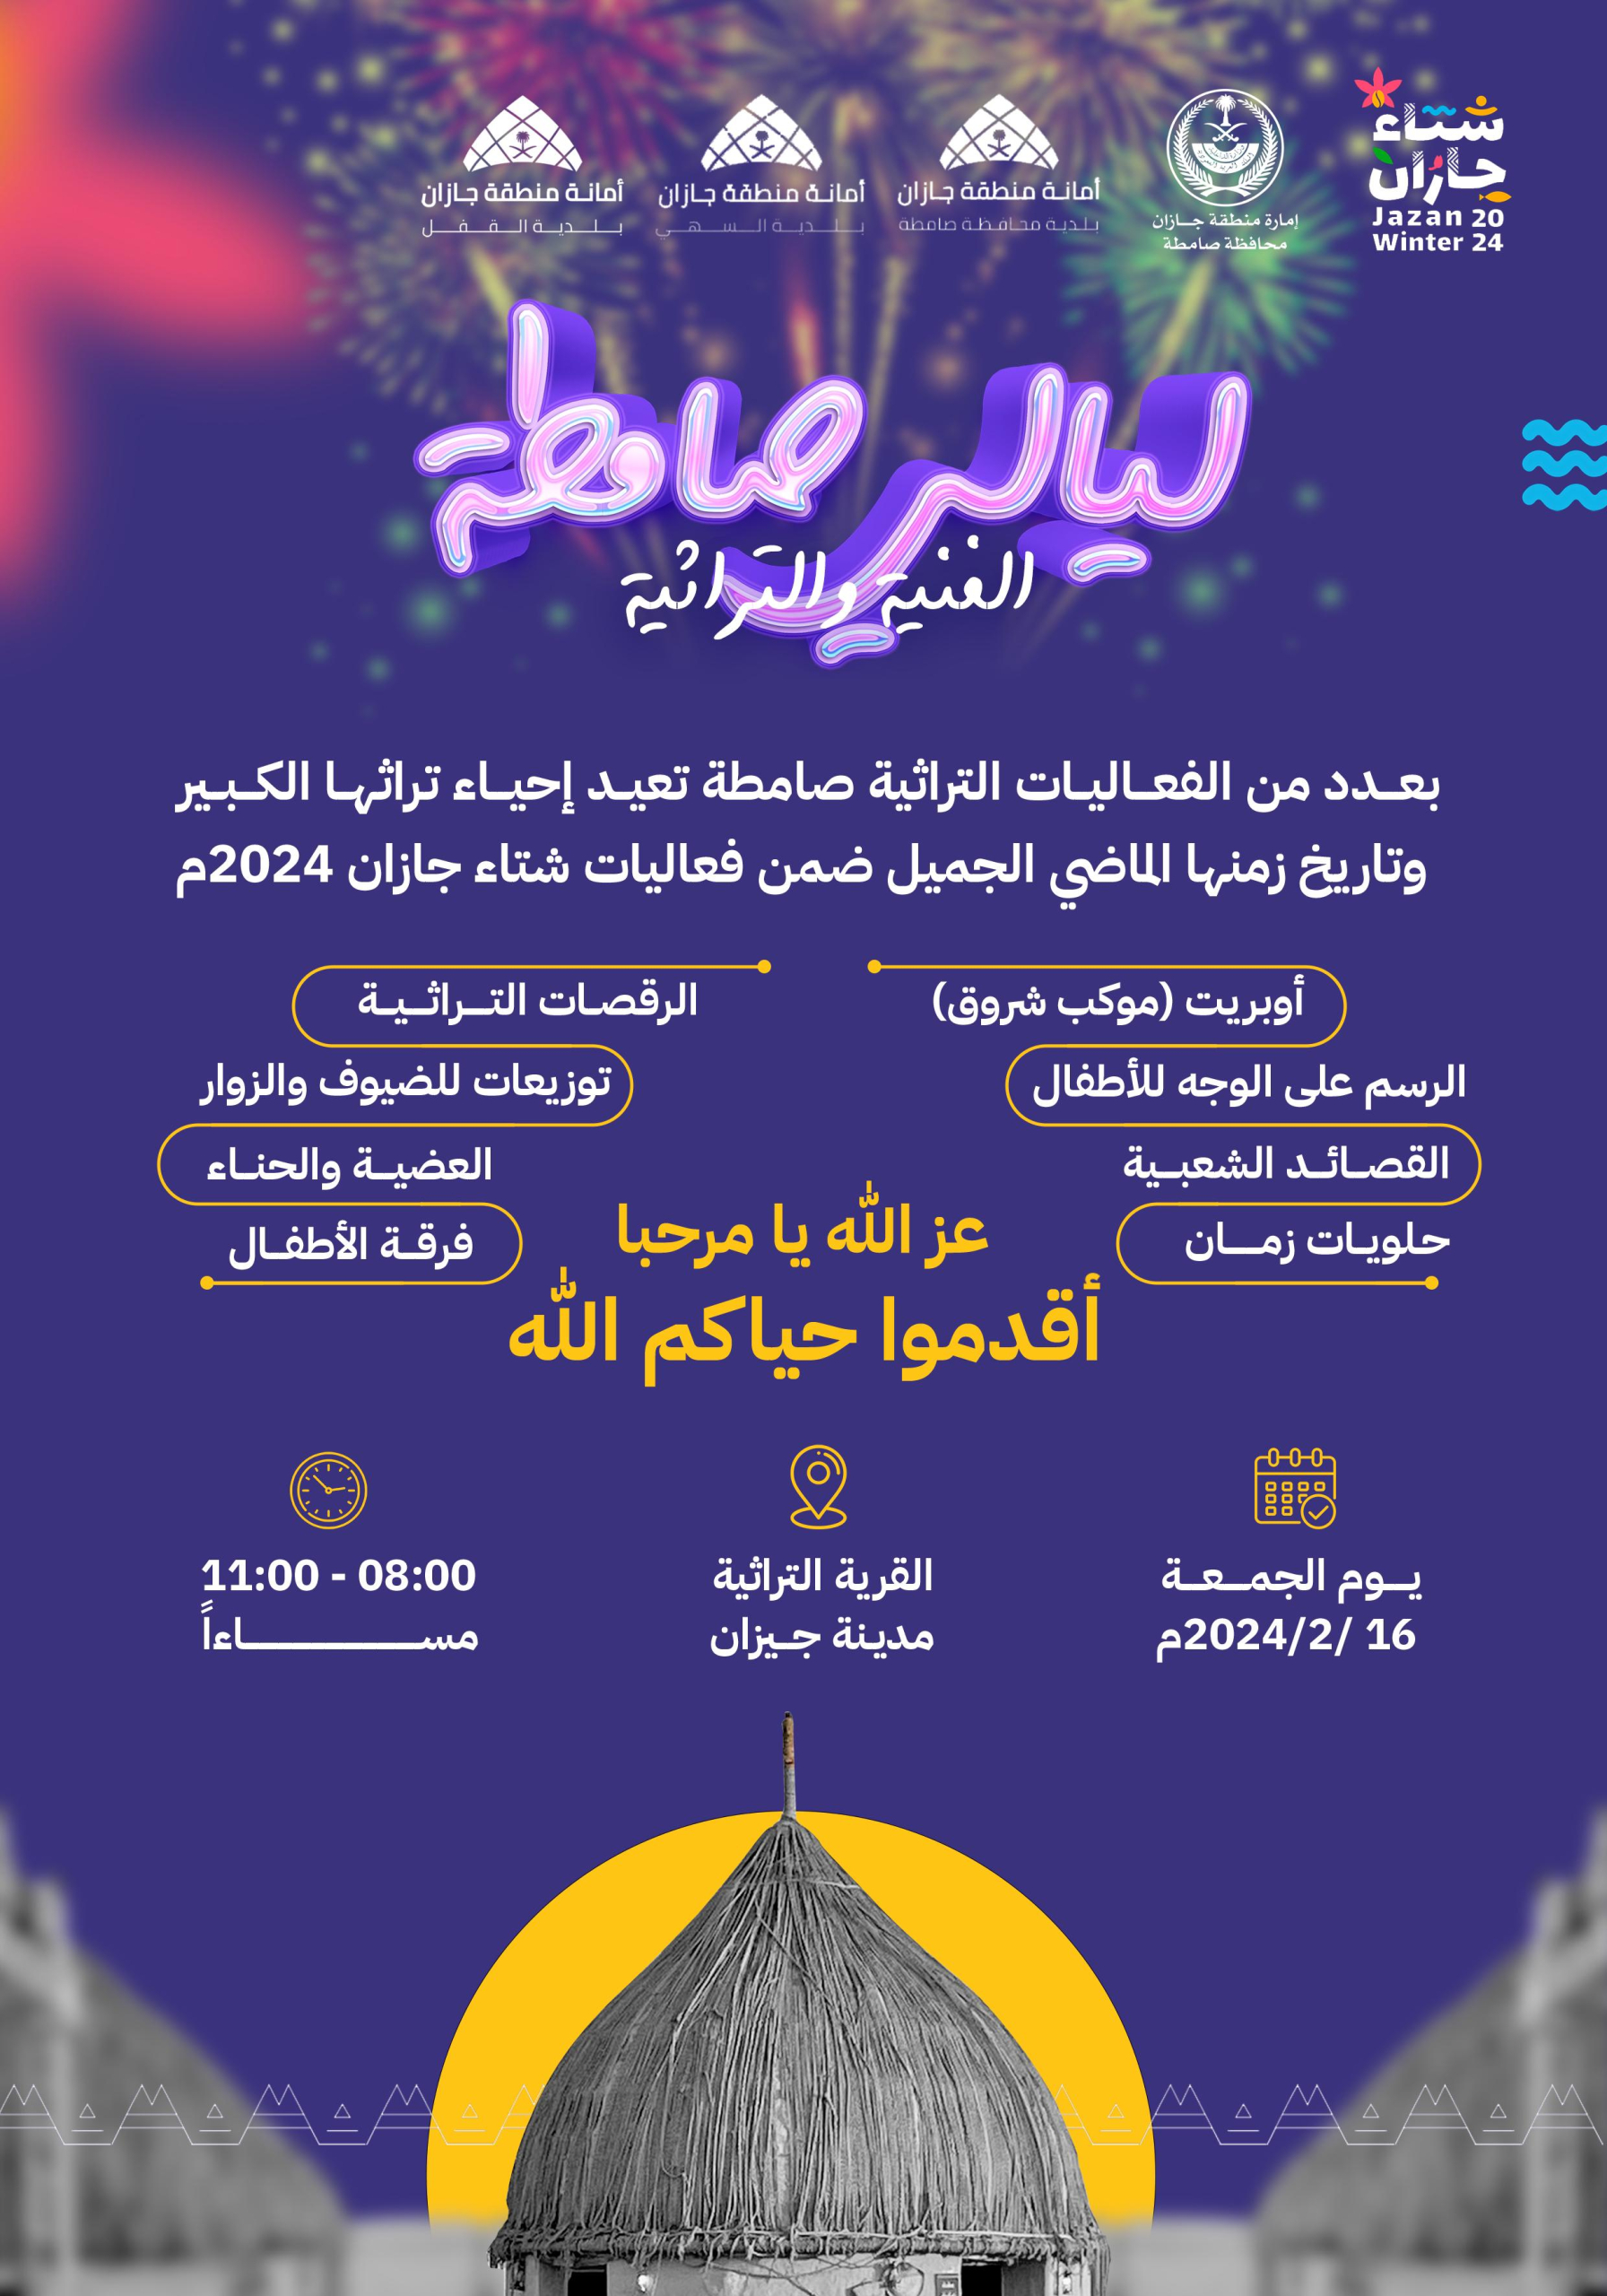 محافظة صامطة تنهي استعداداتها لإحياء ليلتها الفنية